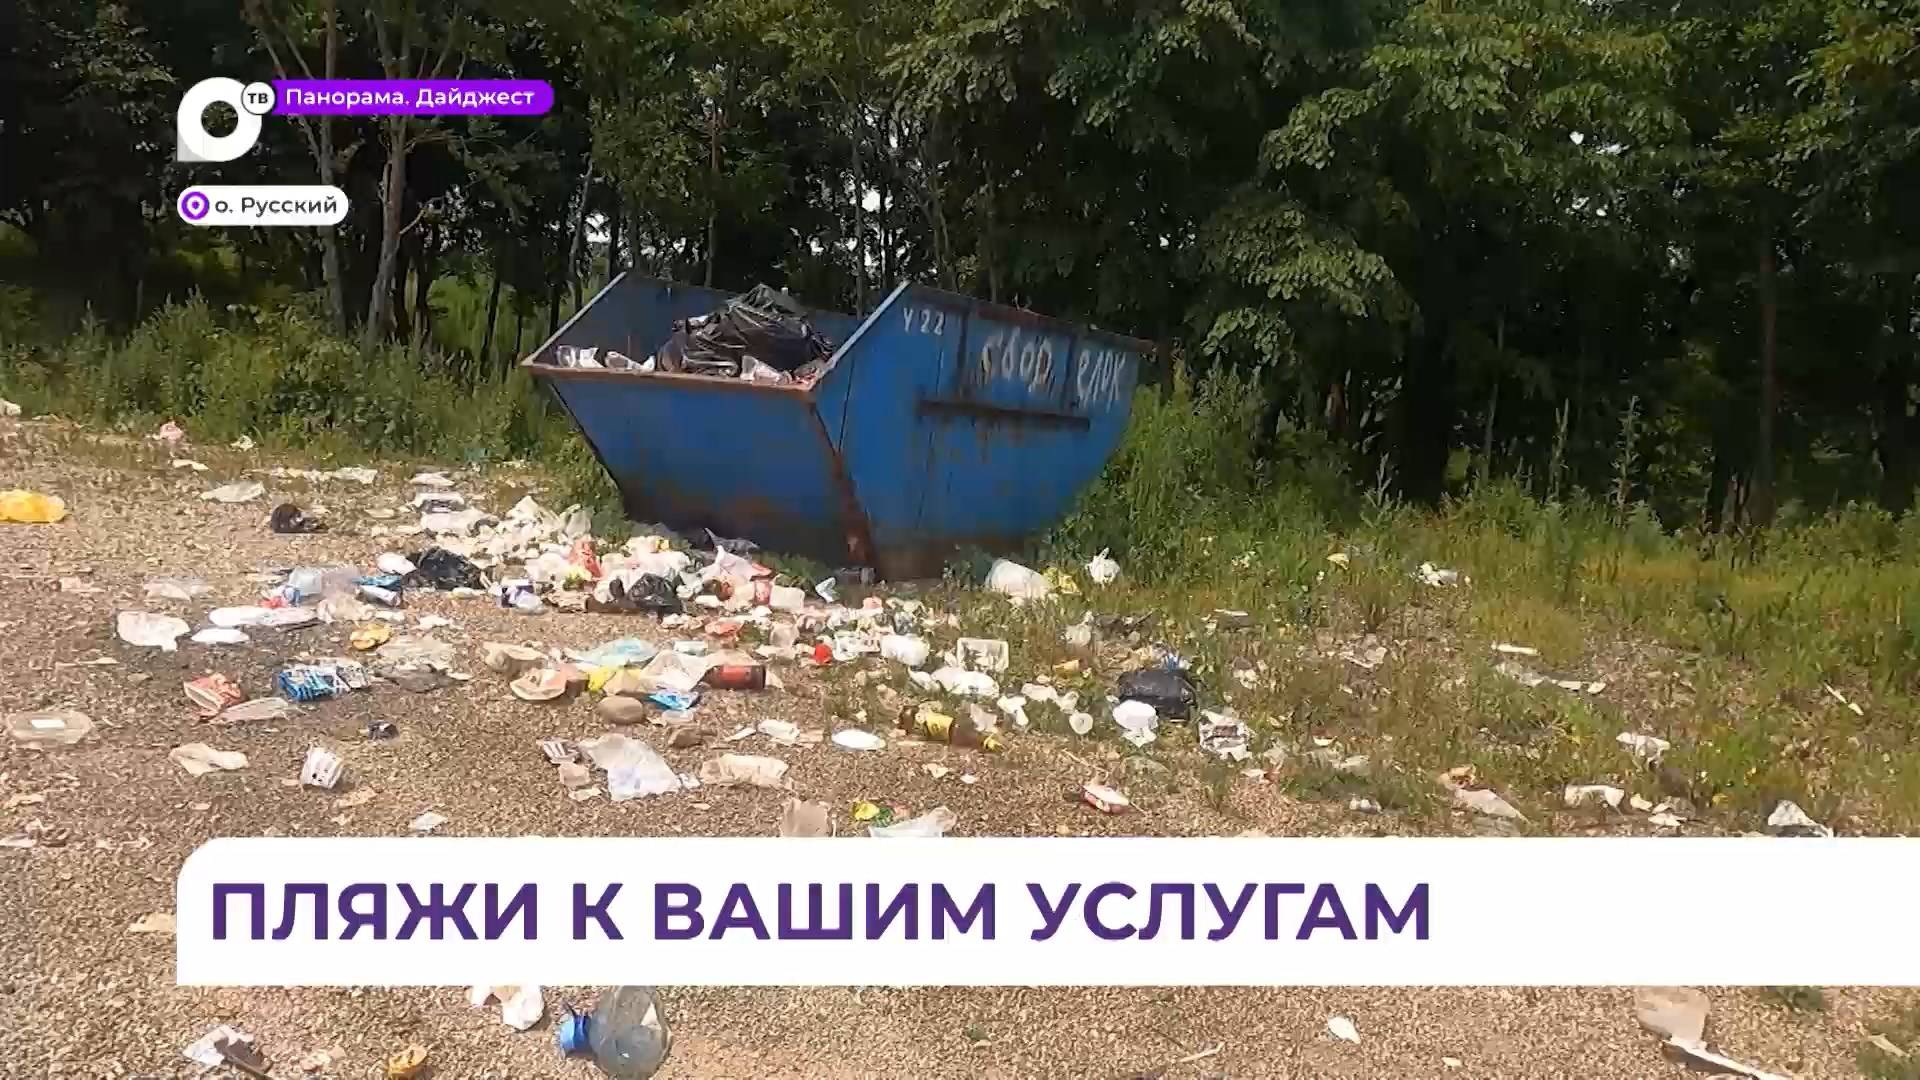 Выездные комиссии признали не все пляжи Русского острова комфортными для отдыха